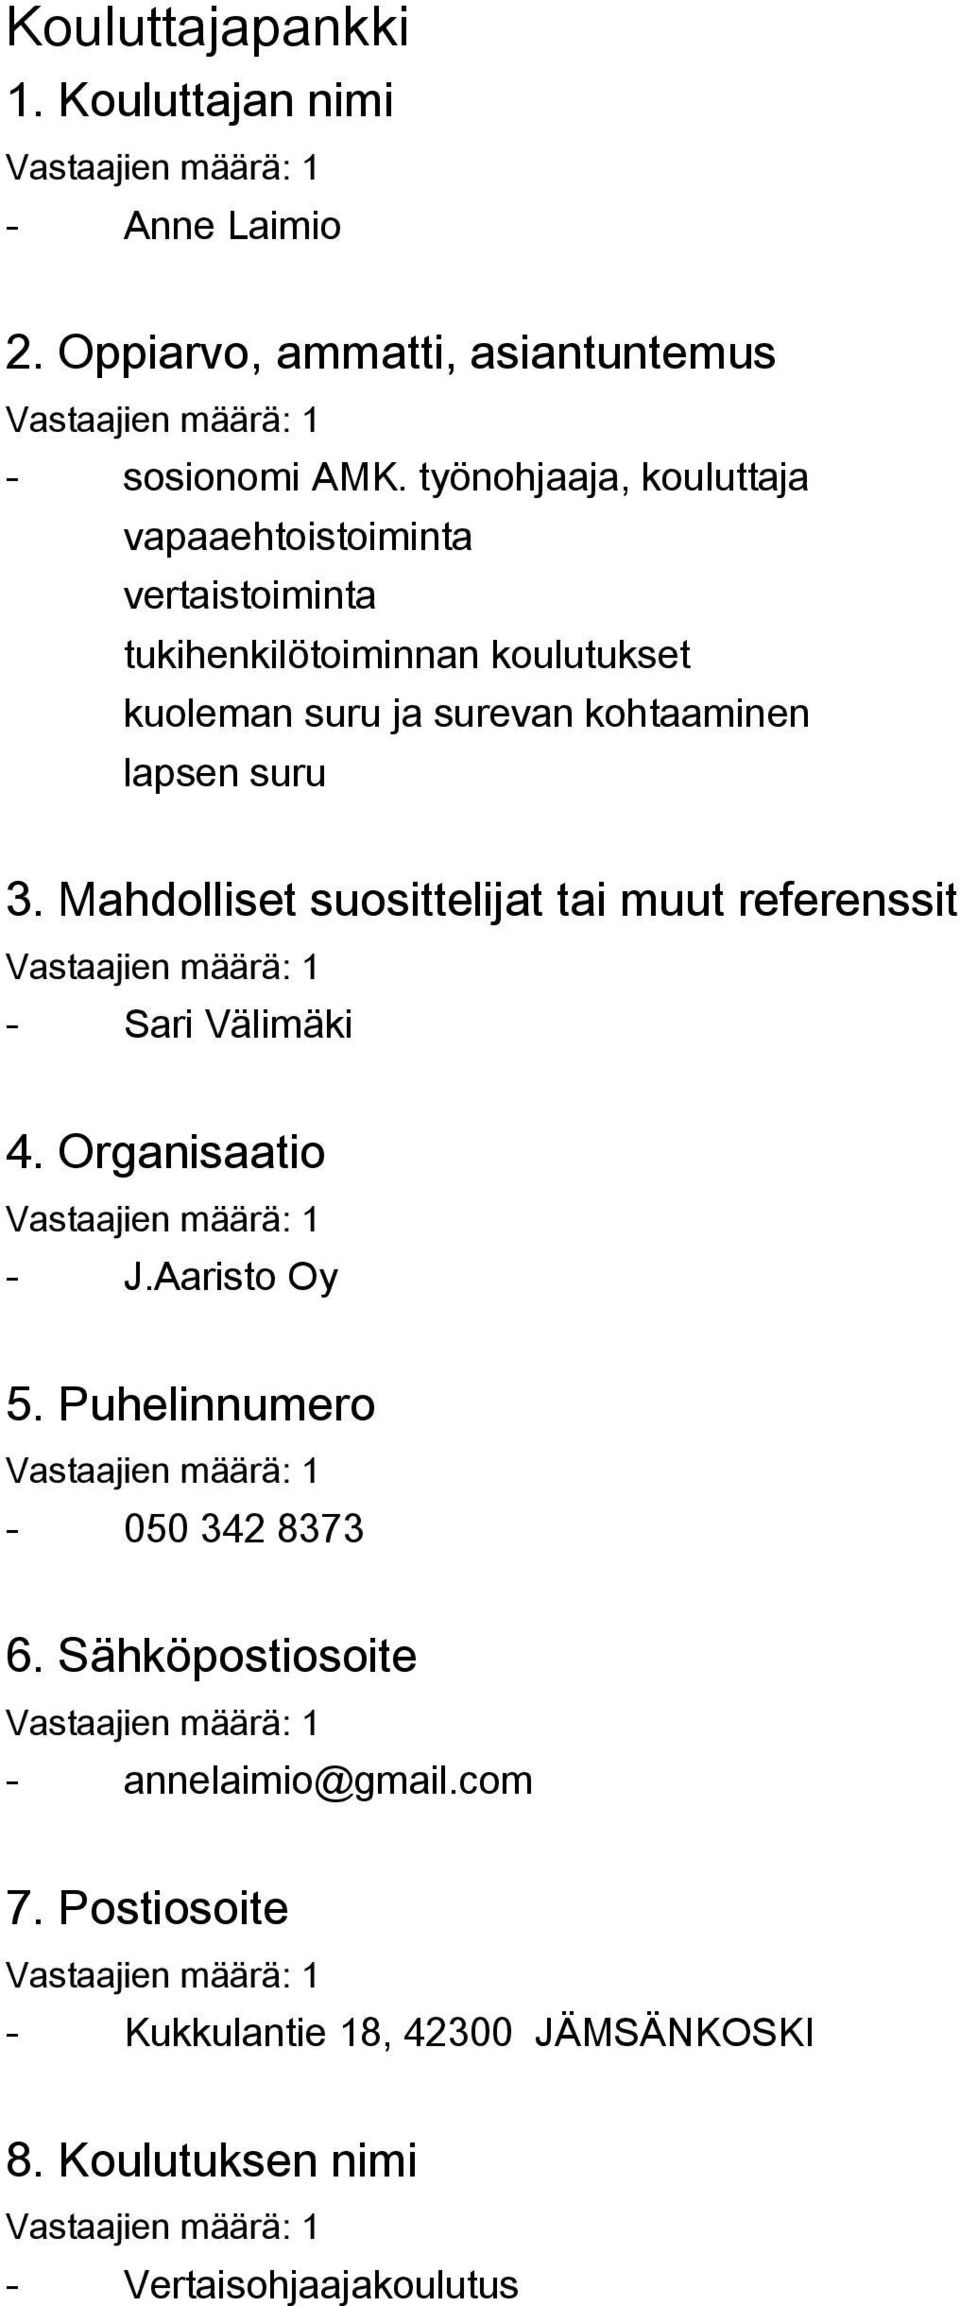 kohtaaminen lapsen suru 3. Mahdolliset suosittelijat tai muut referenssit - Sari Välimäki 4. Organisaatio - J.Aaristo Oy 5.